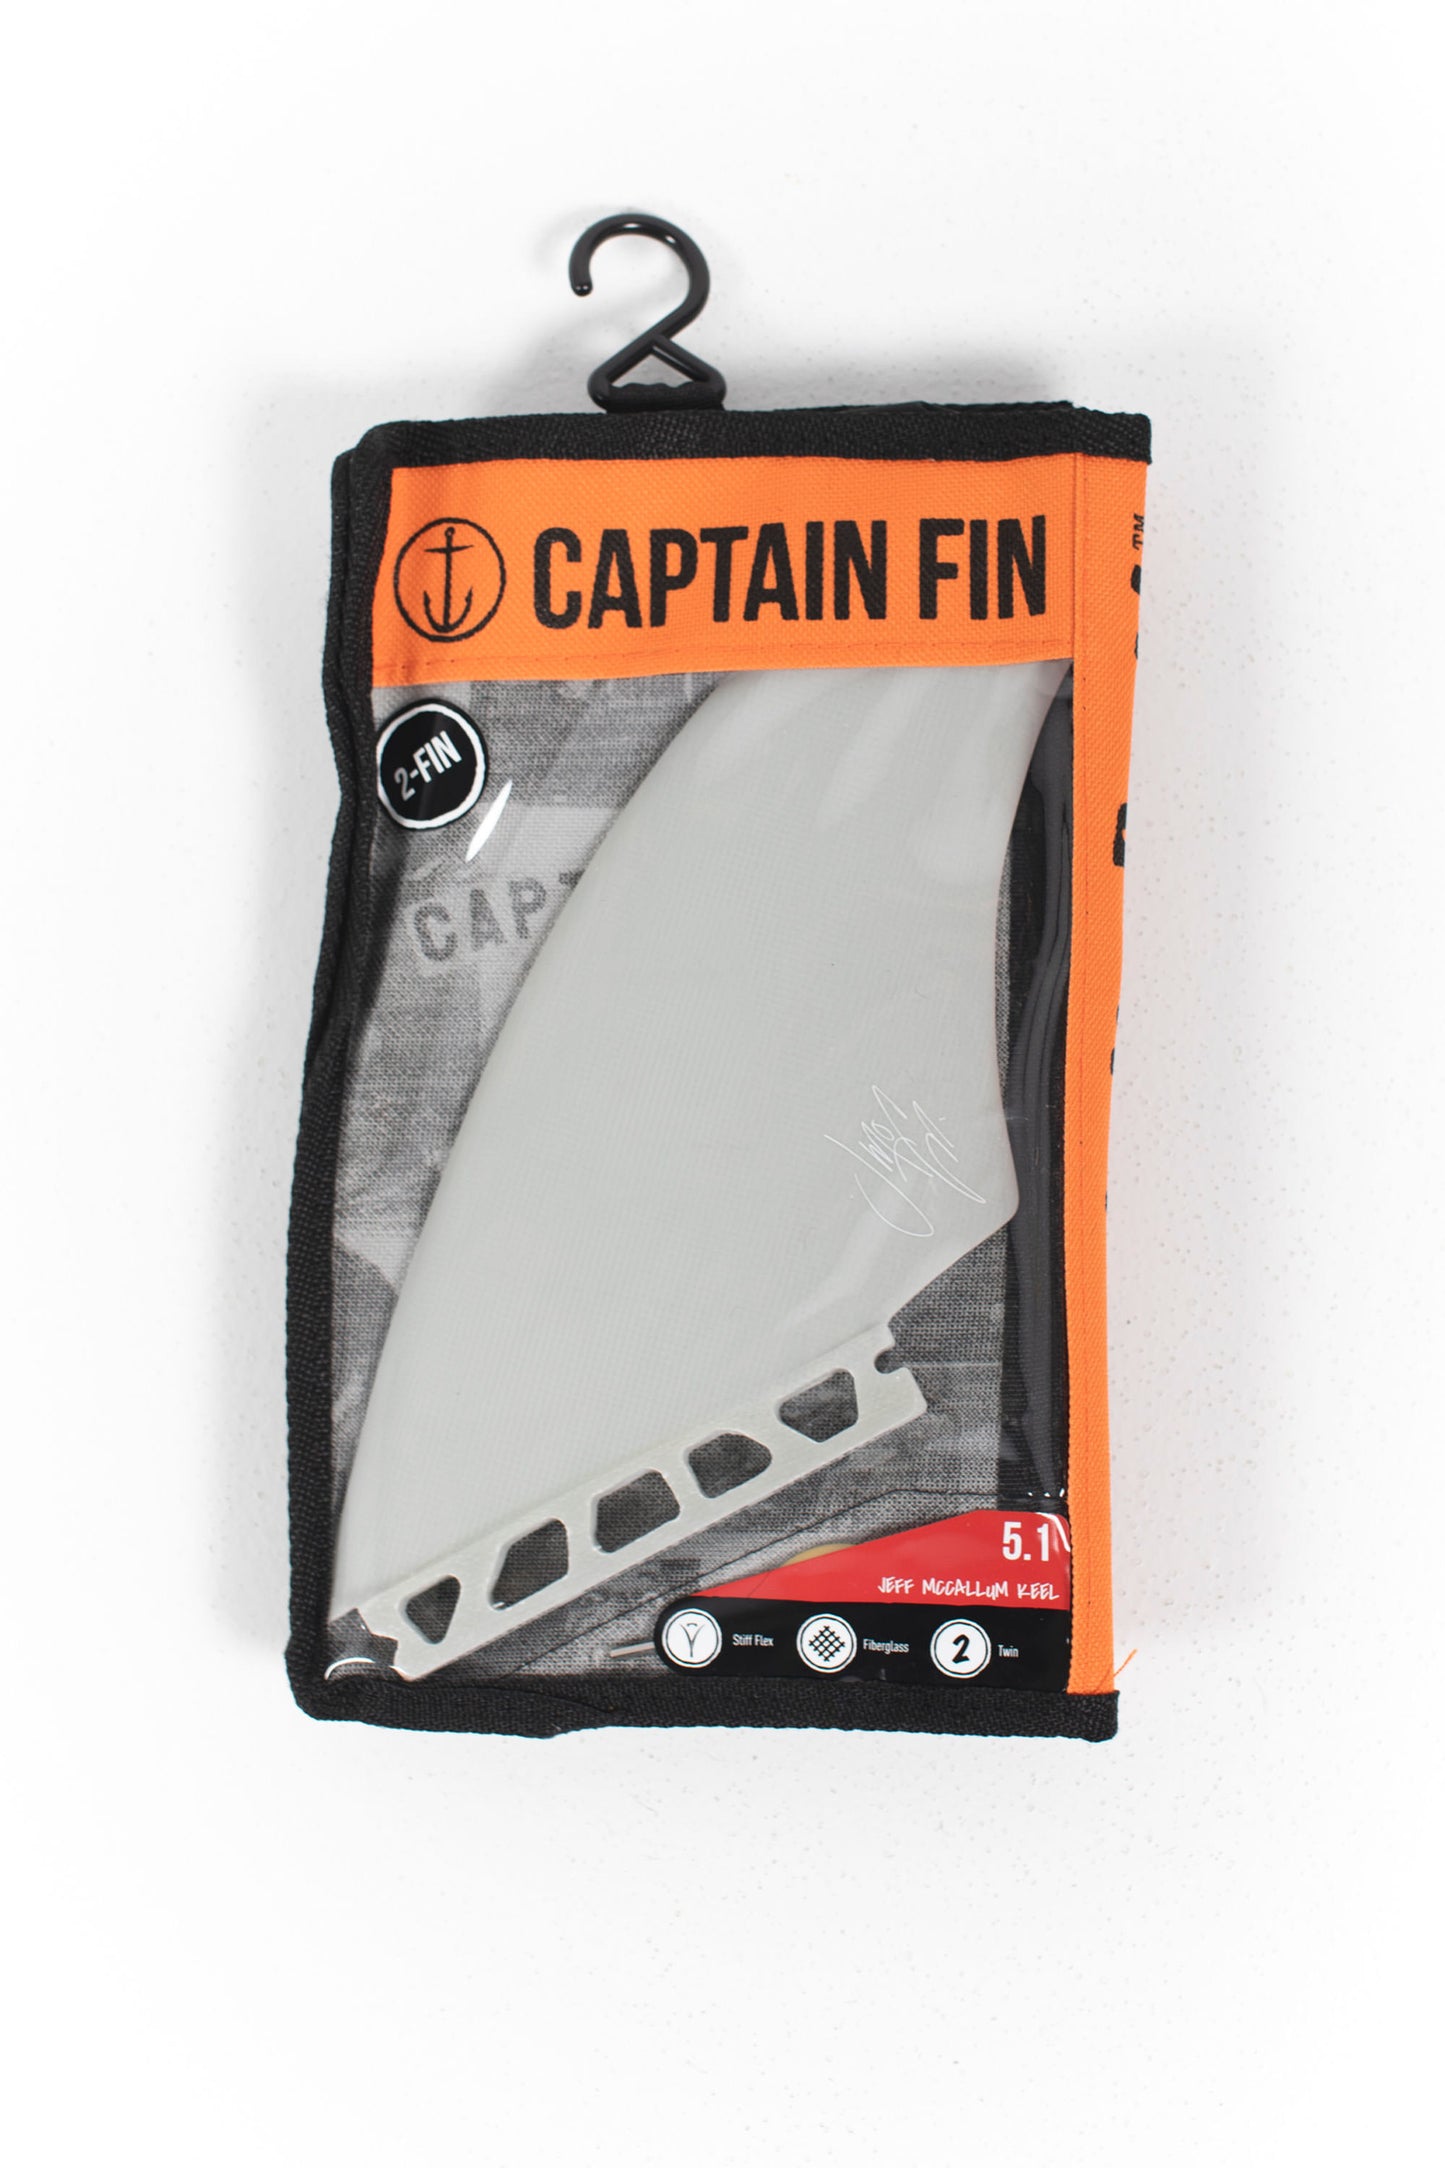 
                  
                    Pukas Surf Shop - Captain Fin - Jeff Mccallum - Keel - 2 fins - 5.1 - Off white
                  
                